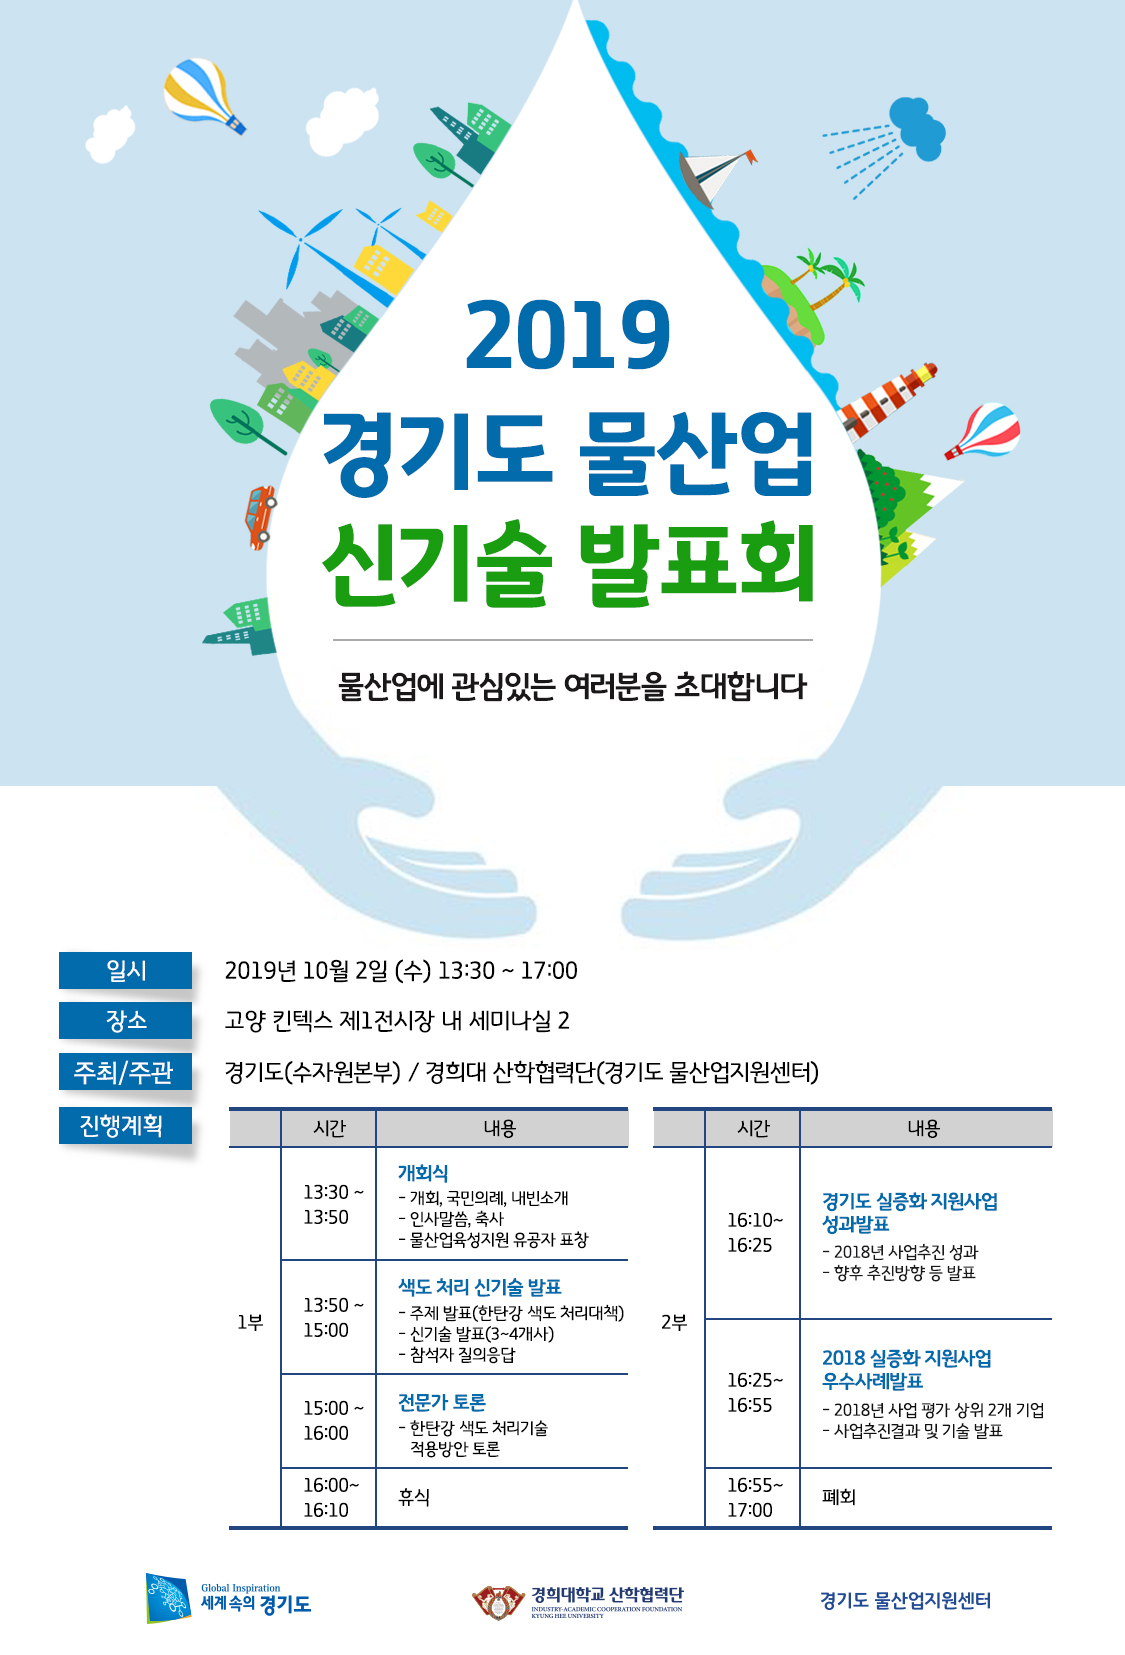 2019 경기도 물산업 신기술 발표회 개최 